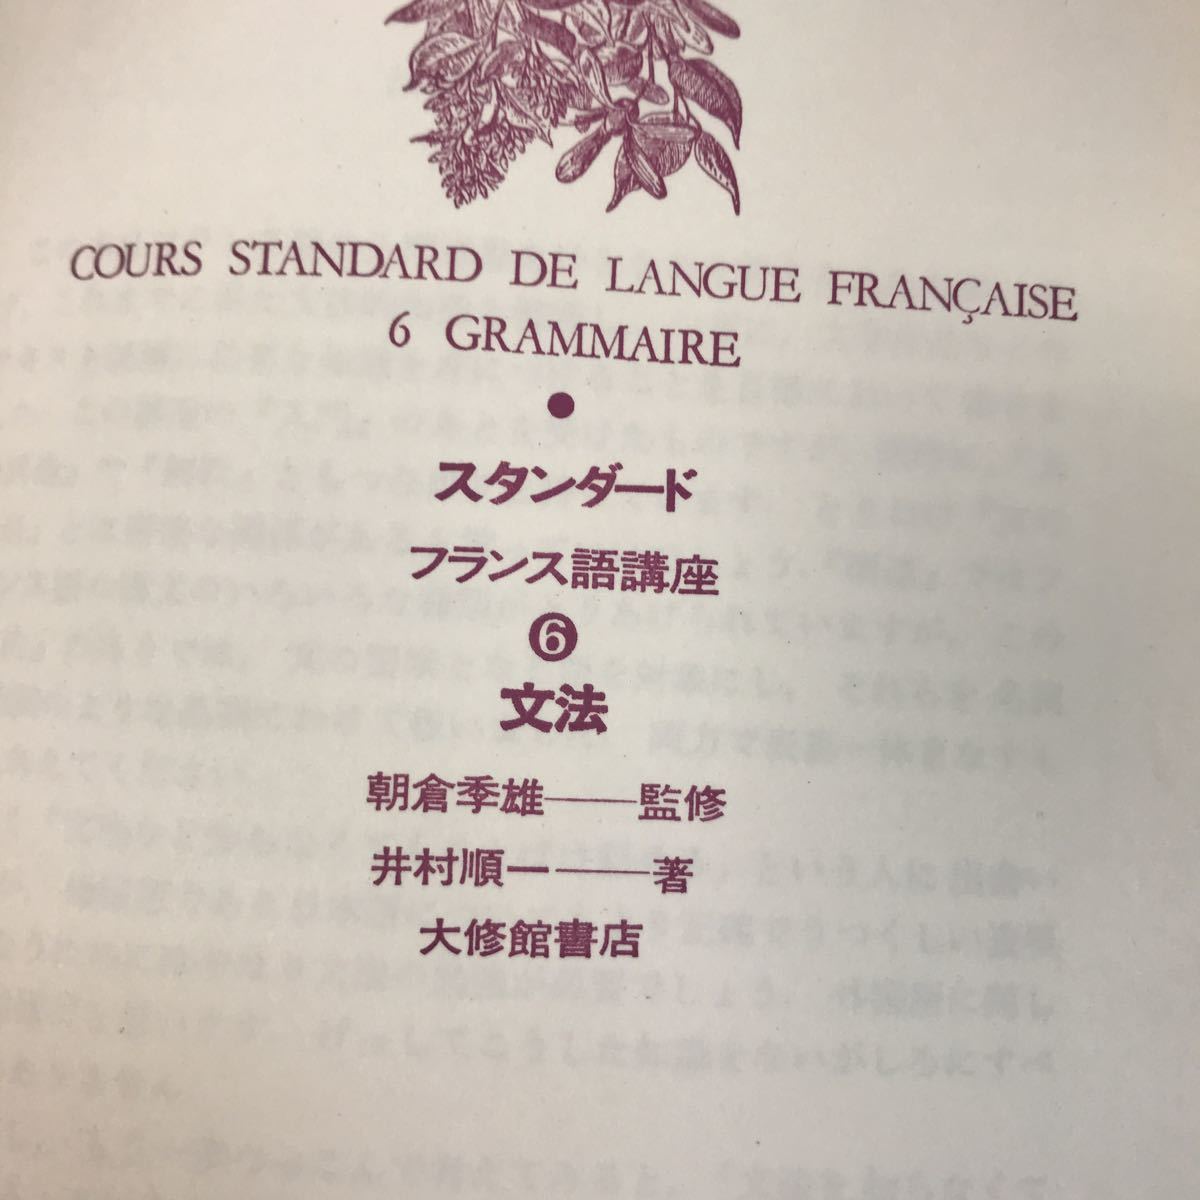 A12-097 стандартный французский язык курс ⑥ грамматика Tokyo университет ..... последовательность один работа большой . павильон .